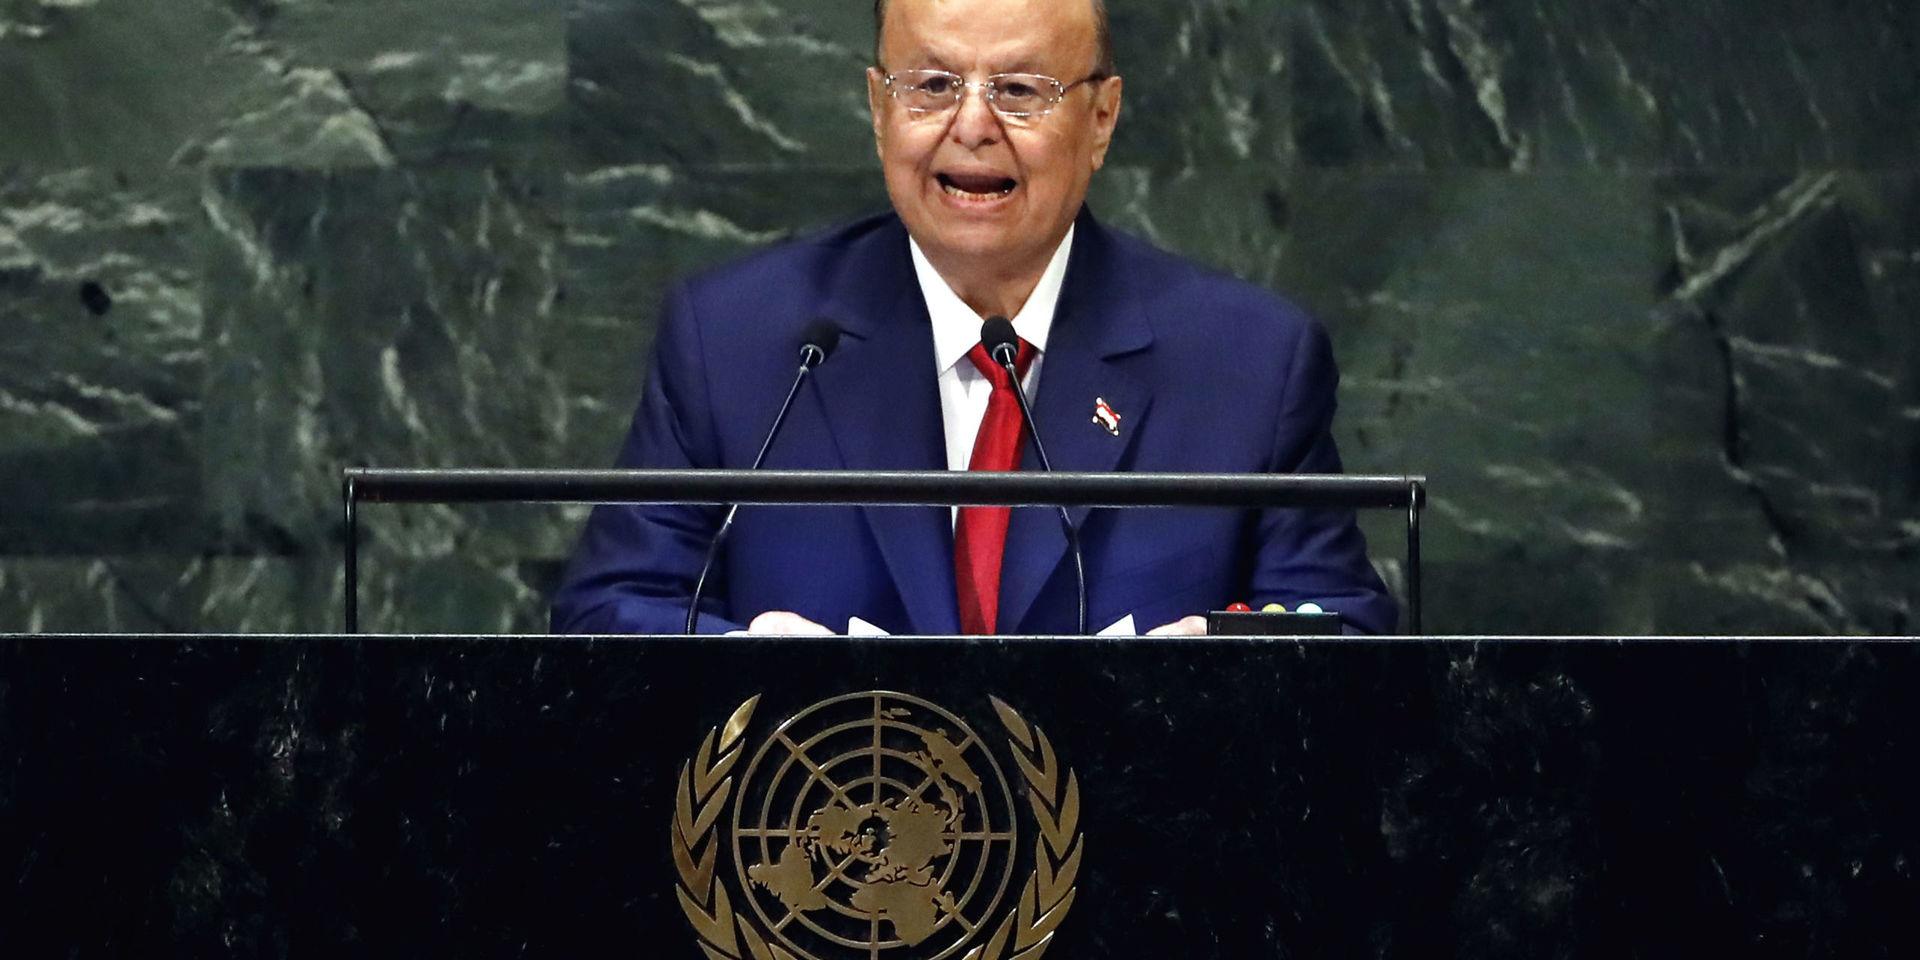 Abd Rabu Mansur Hadi, president i Jemens internationellt erkända regering, under FN:s generalförsamling i New York i fjol. 